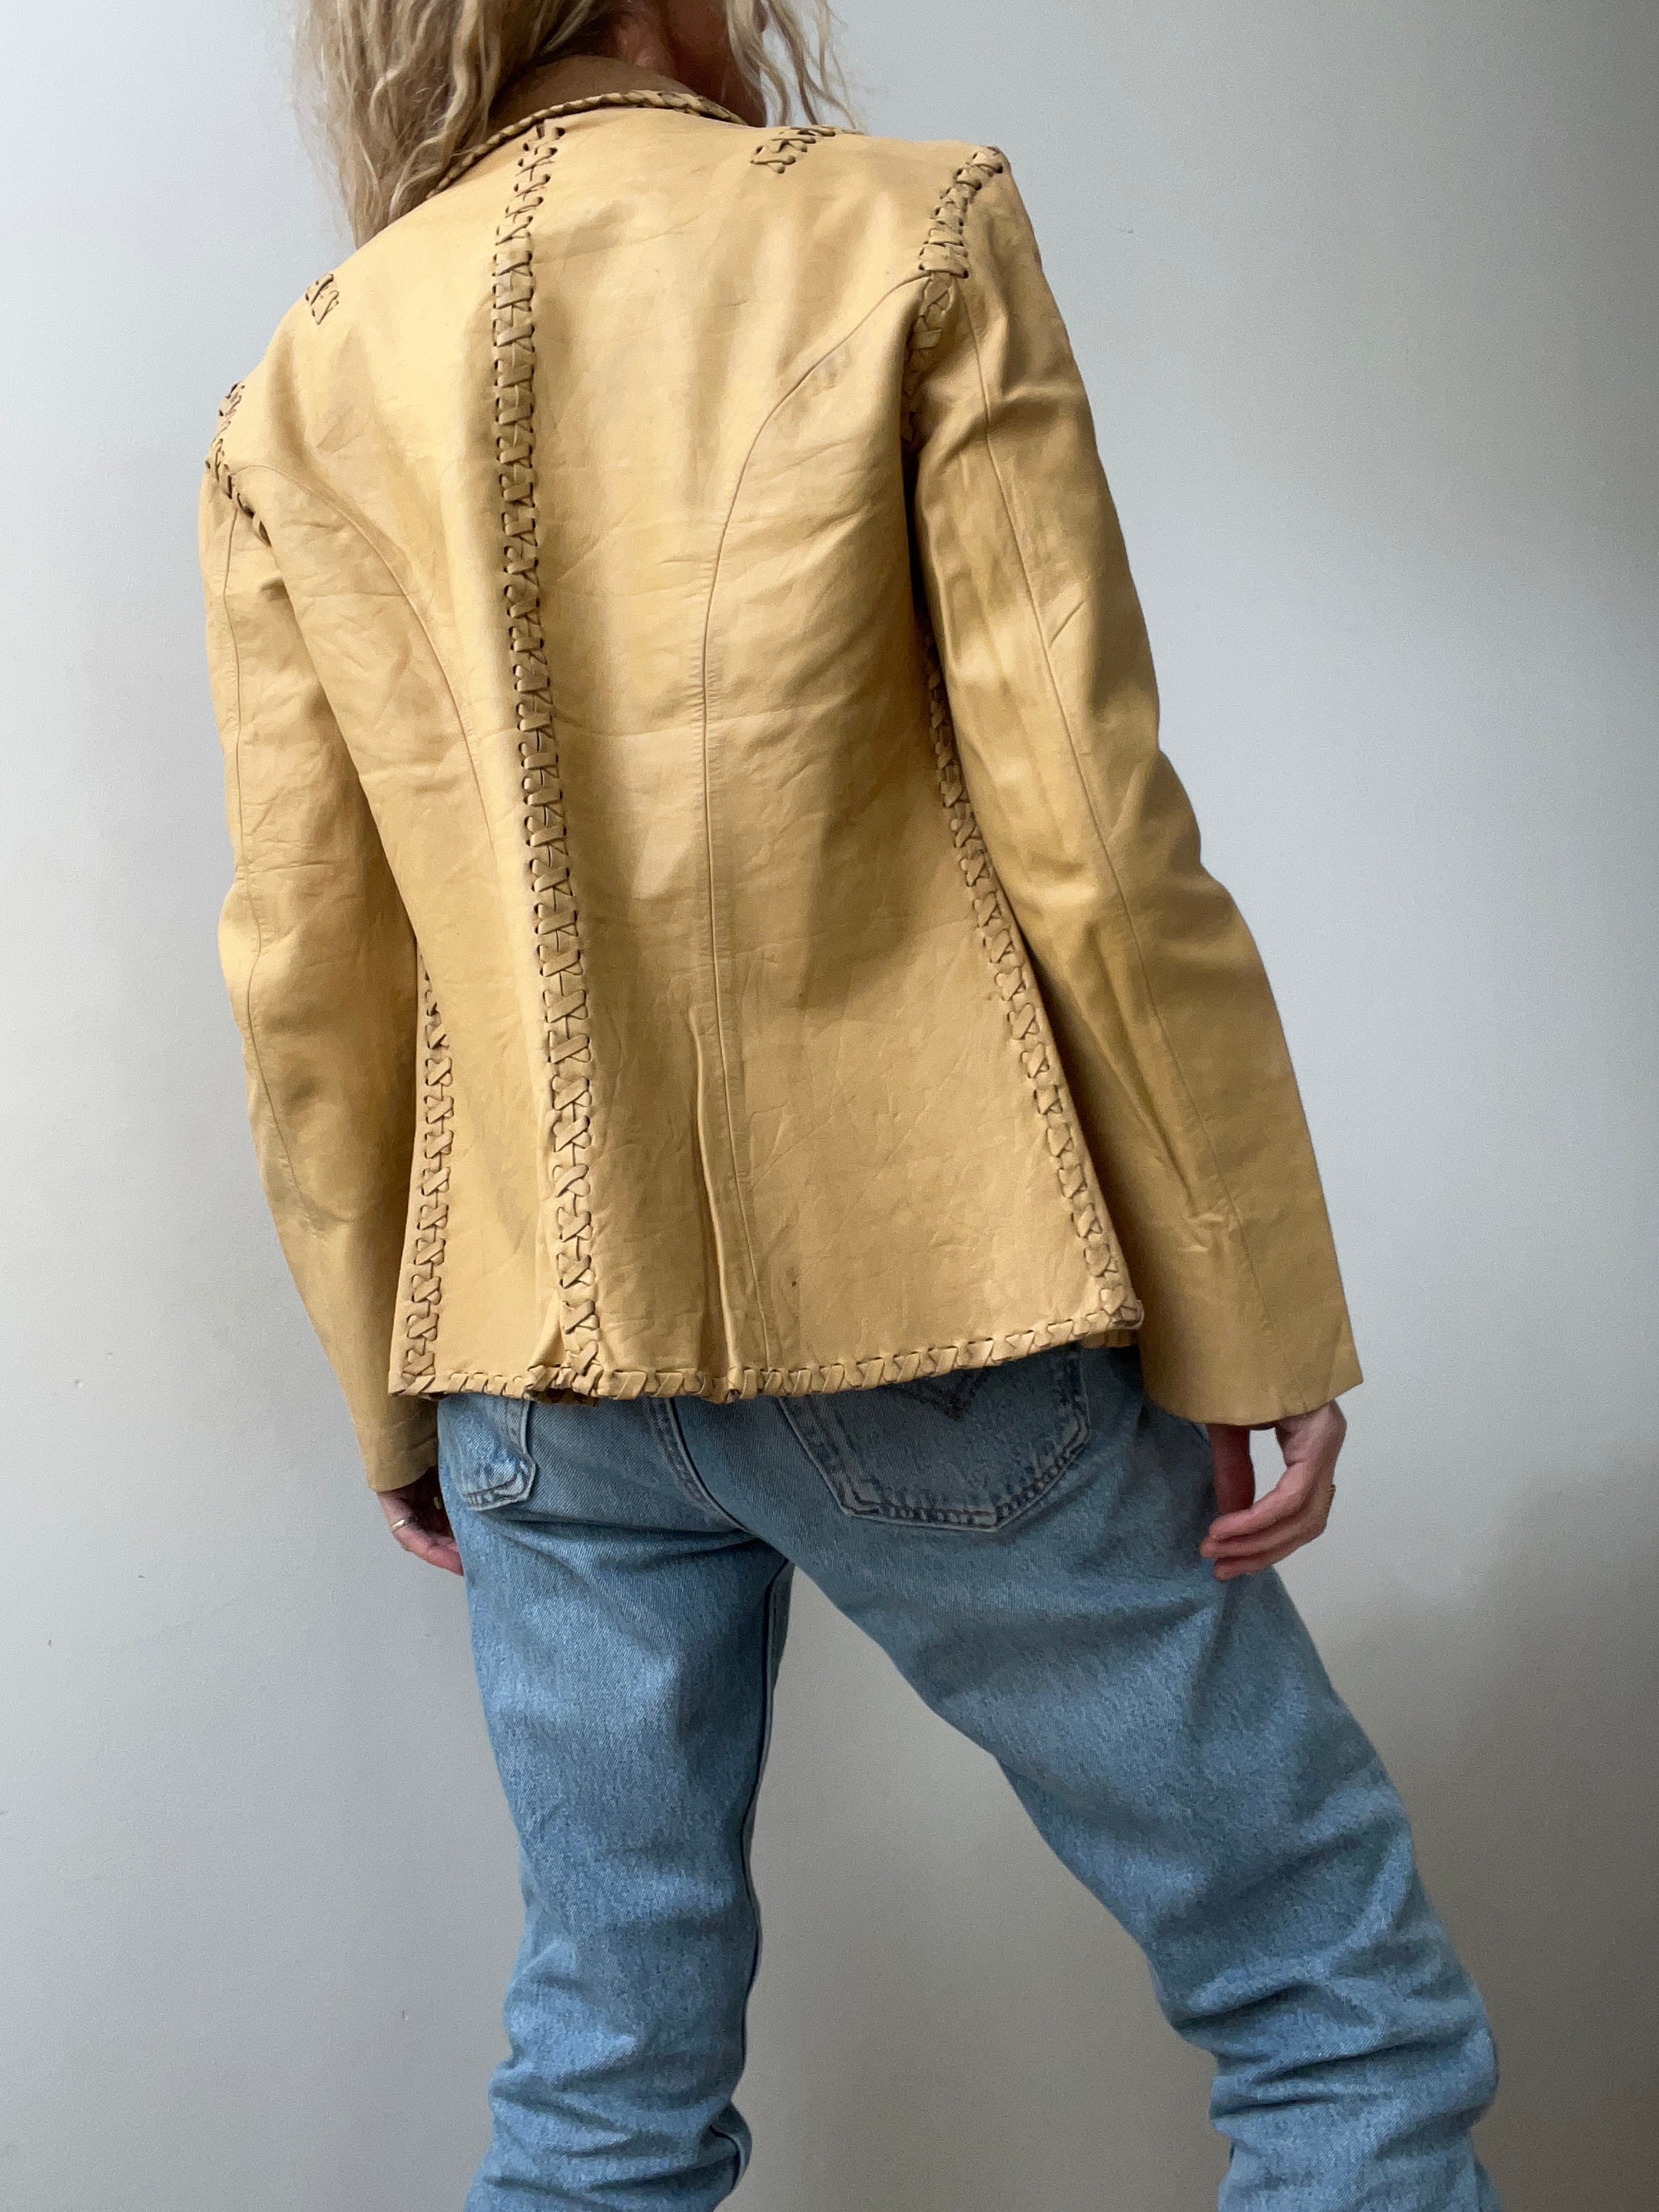 Future Nomads Jackets Medium Vintage RL Stitched Jacket